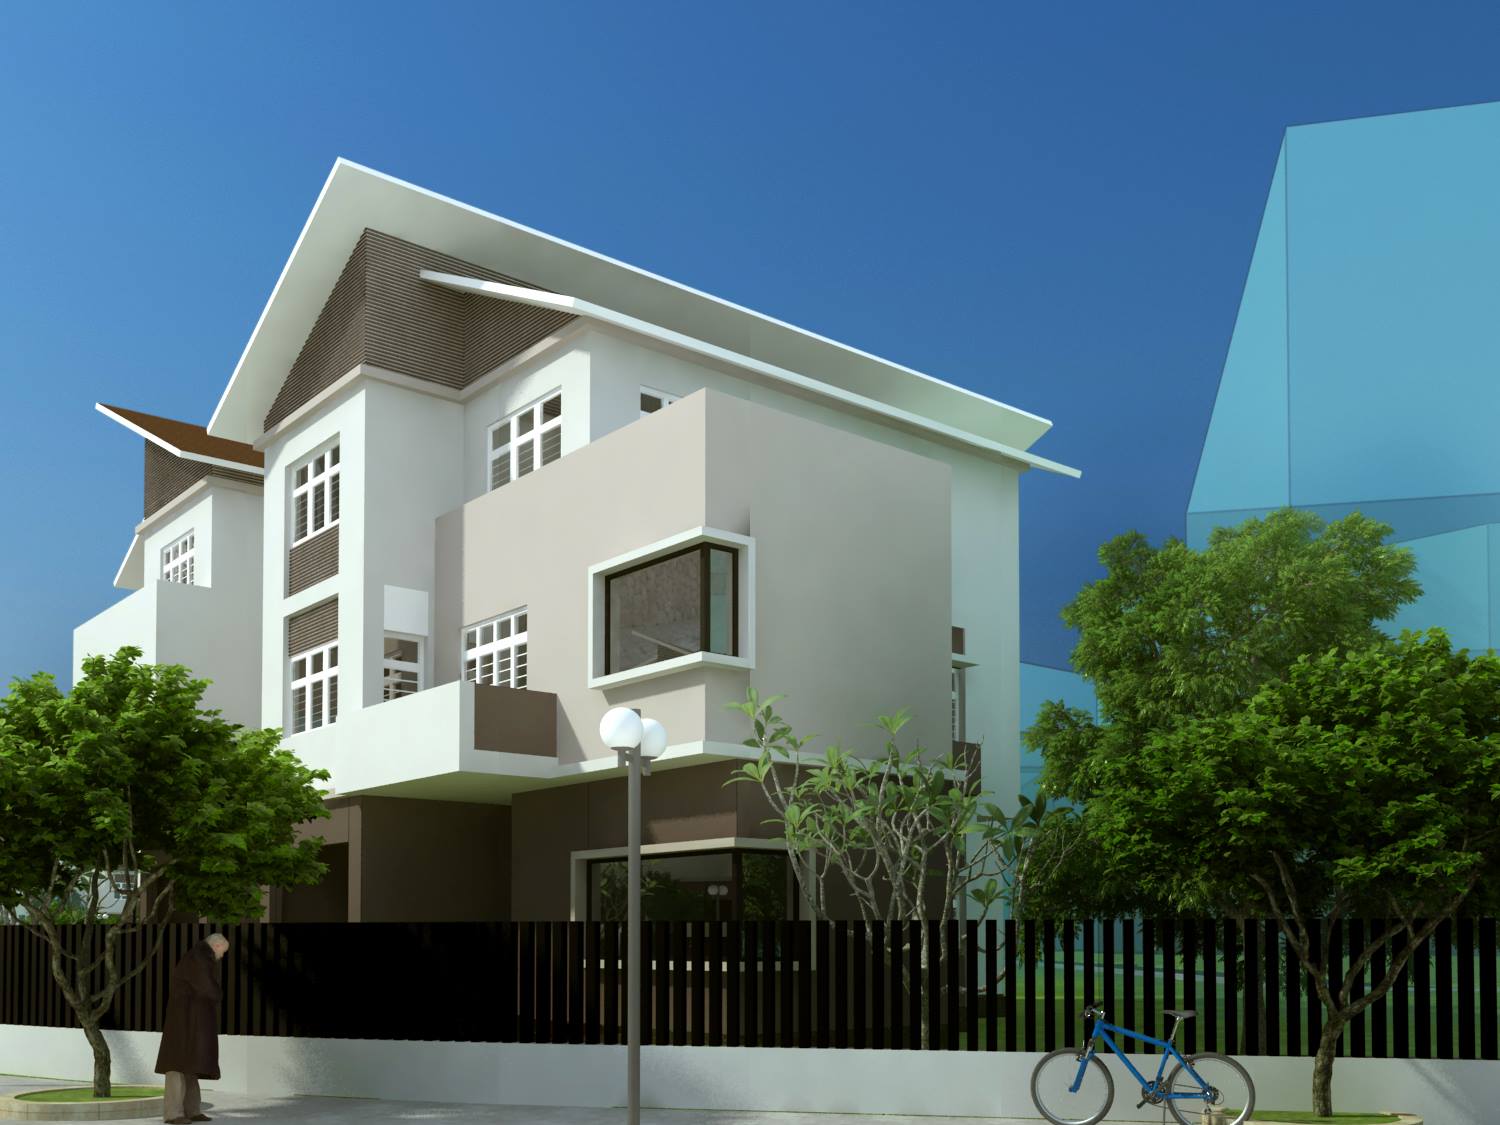 thiết kế Biệt Thự 3 tầng tại Hà Nội Khu Đô Thị Việt Hưng: Biệt Thự Cao Cấp 5 1544159981